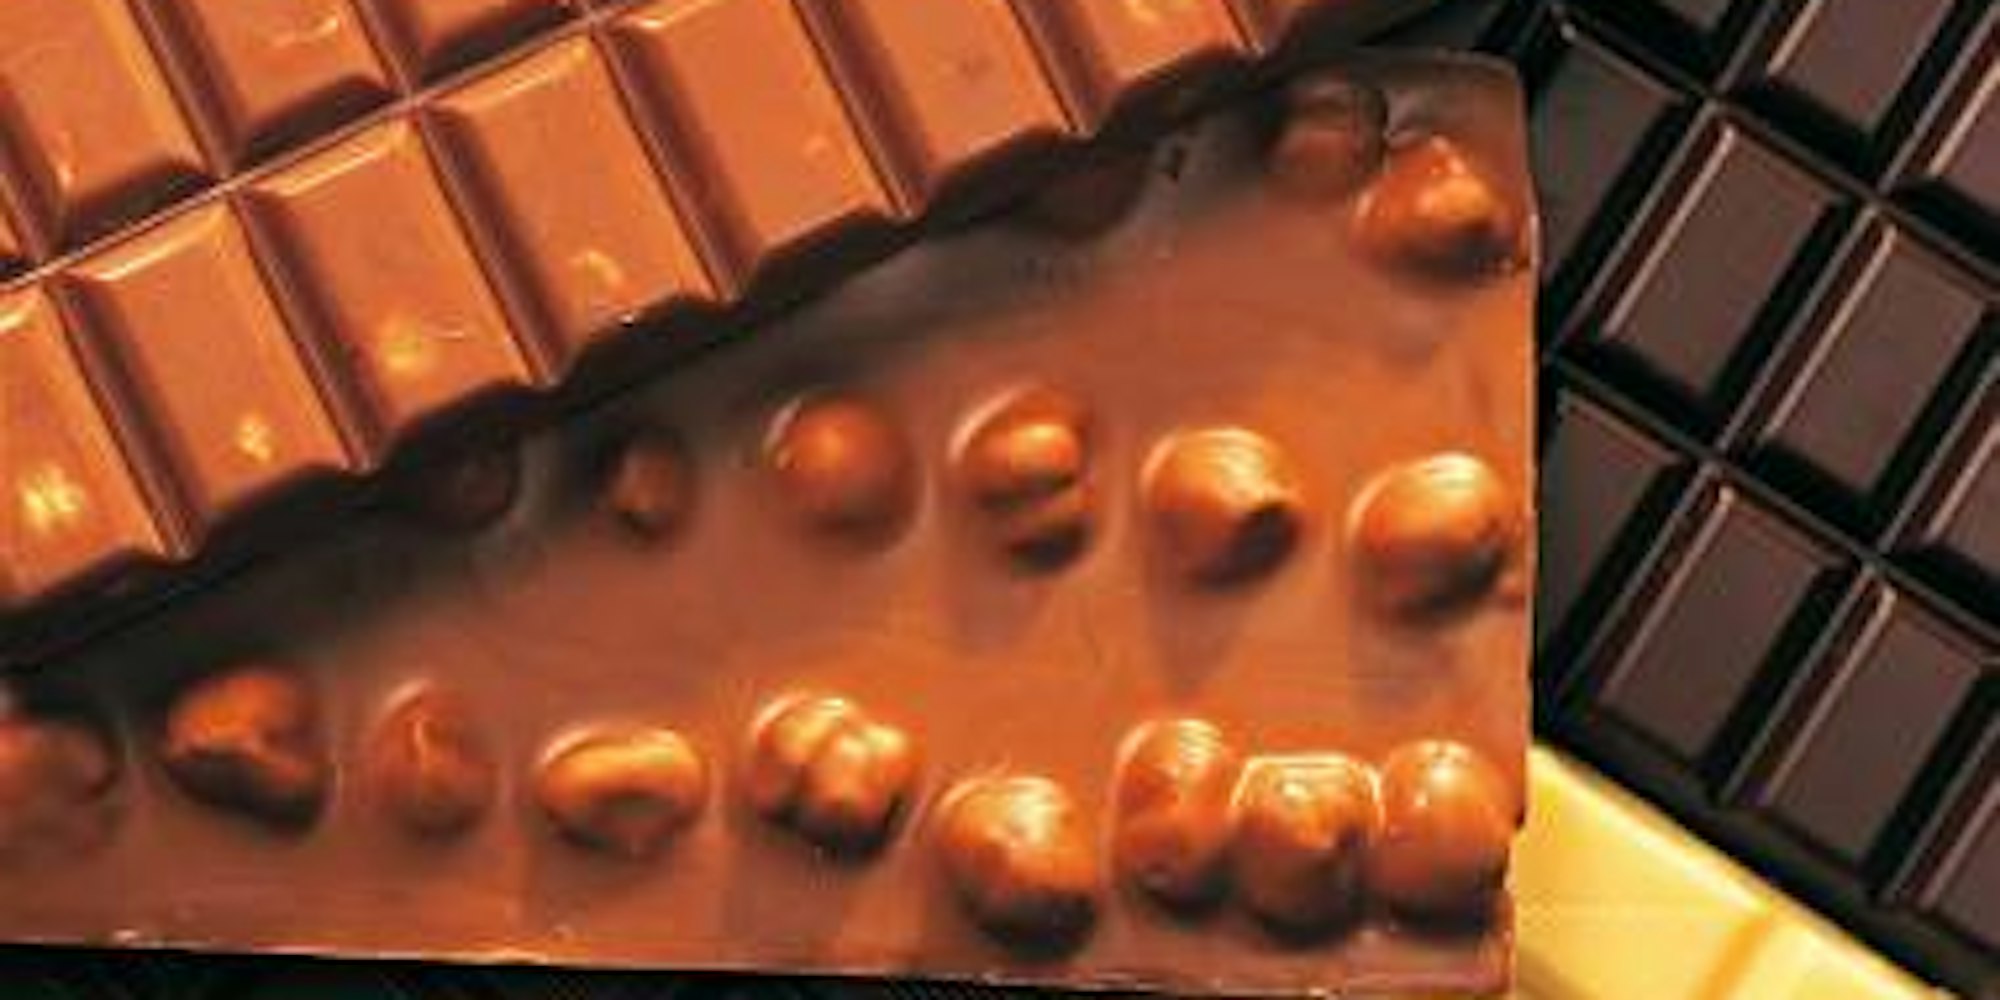 Schokolade soll unterstützend bei der Krebstherapie helfen können. (Bild: dpa)